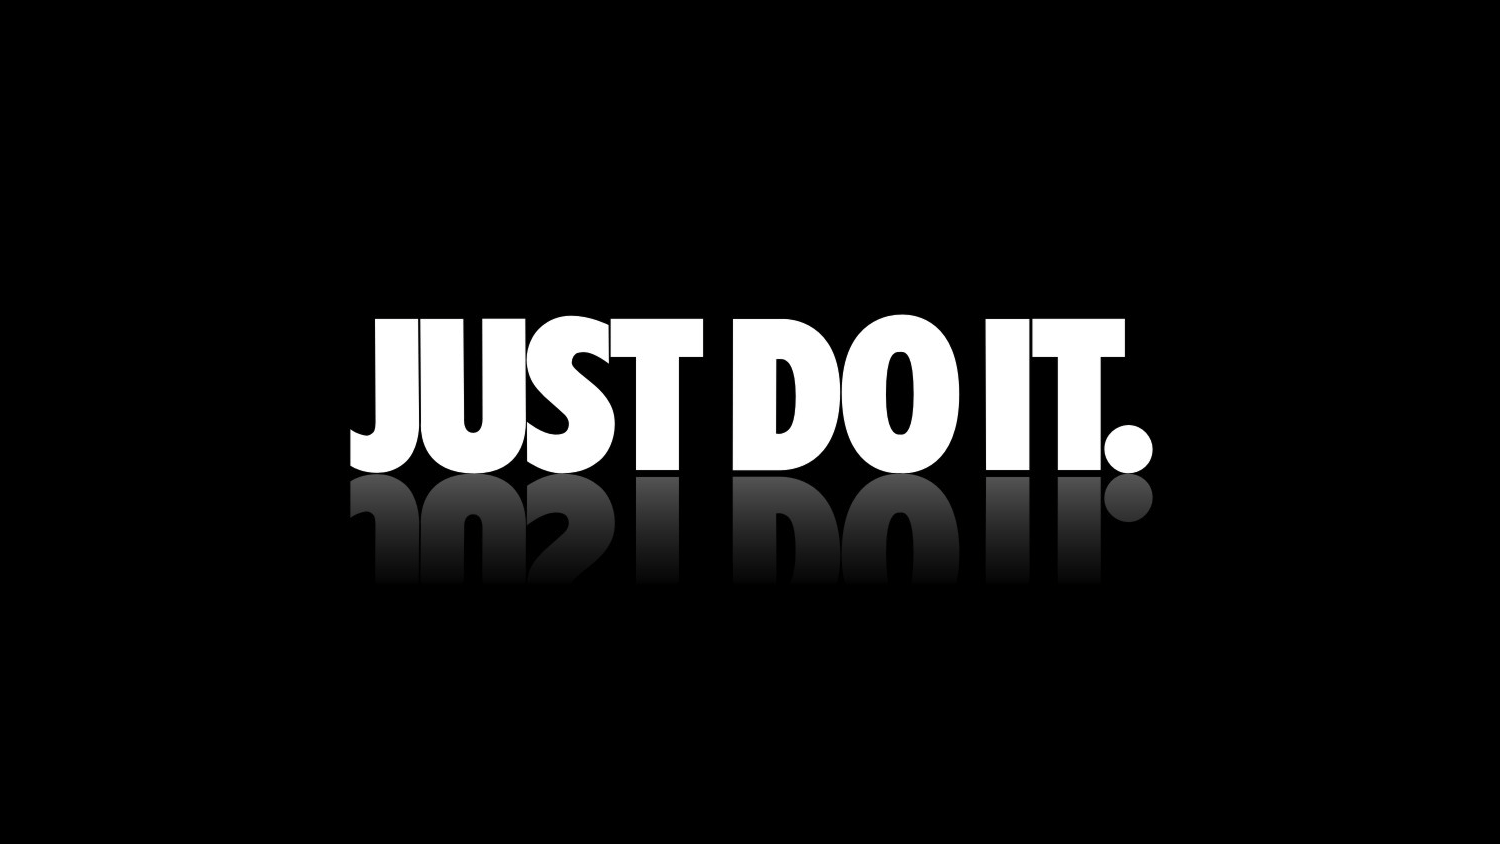 «Just do it» — известный всему миру слоган Nike